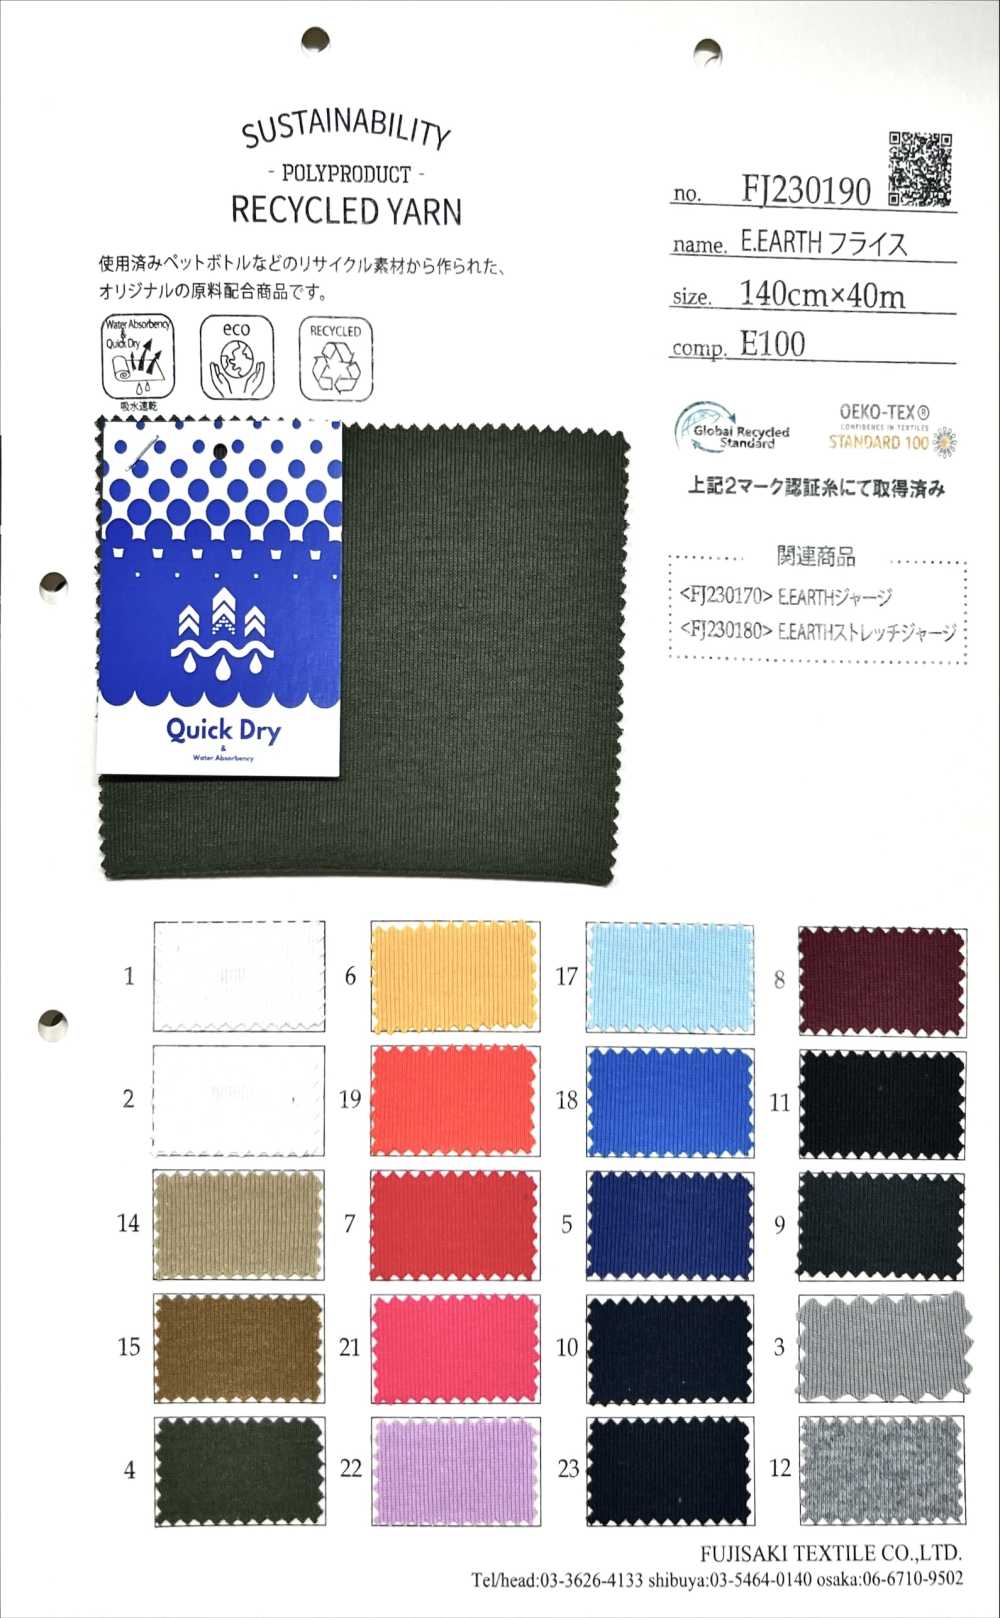 FJ230190 E.EARTH针织罗纹[面料] Fujisaki Textile